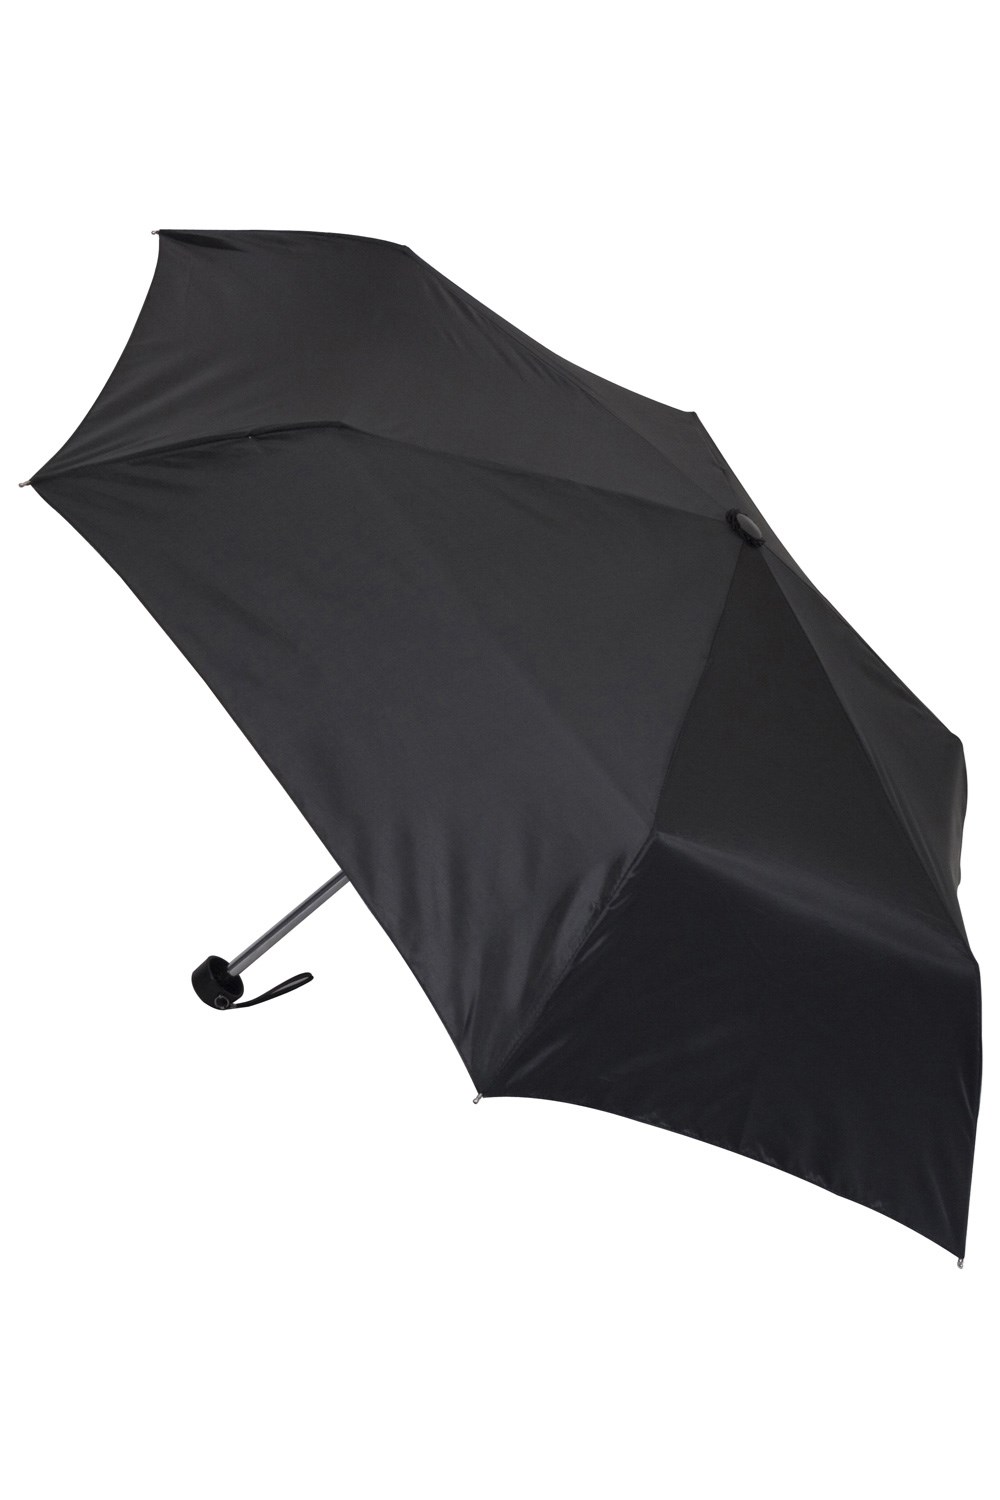 Petit parapluie - Noir